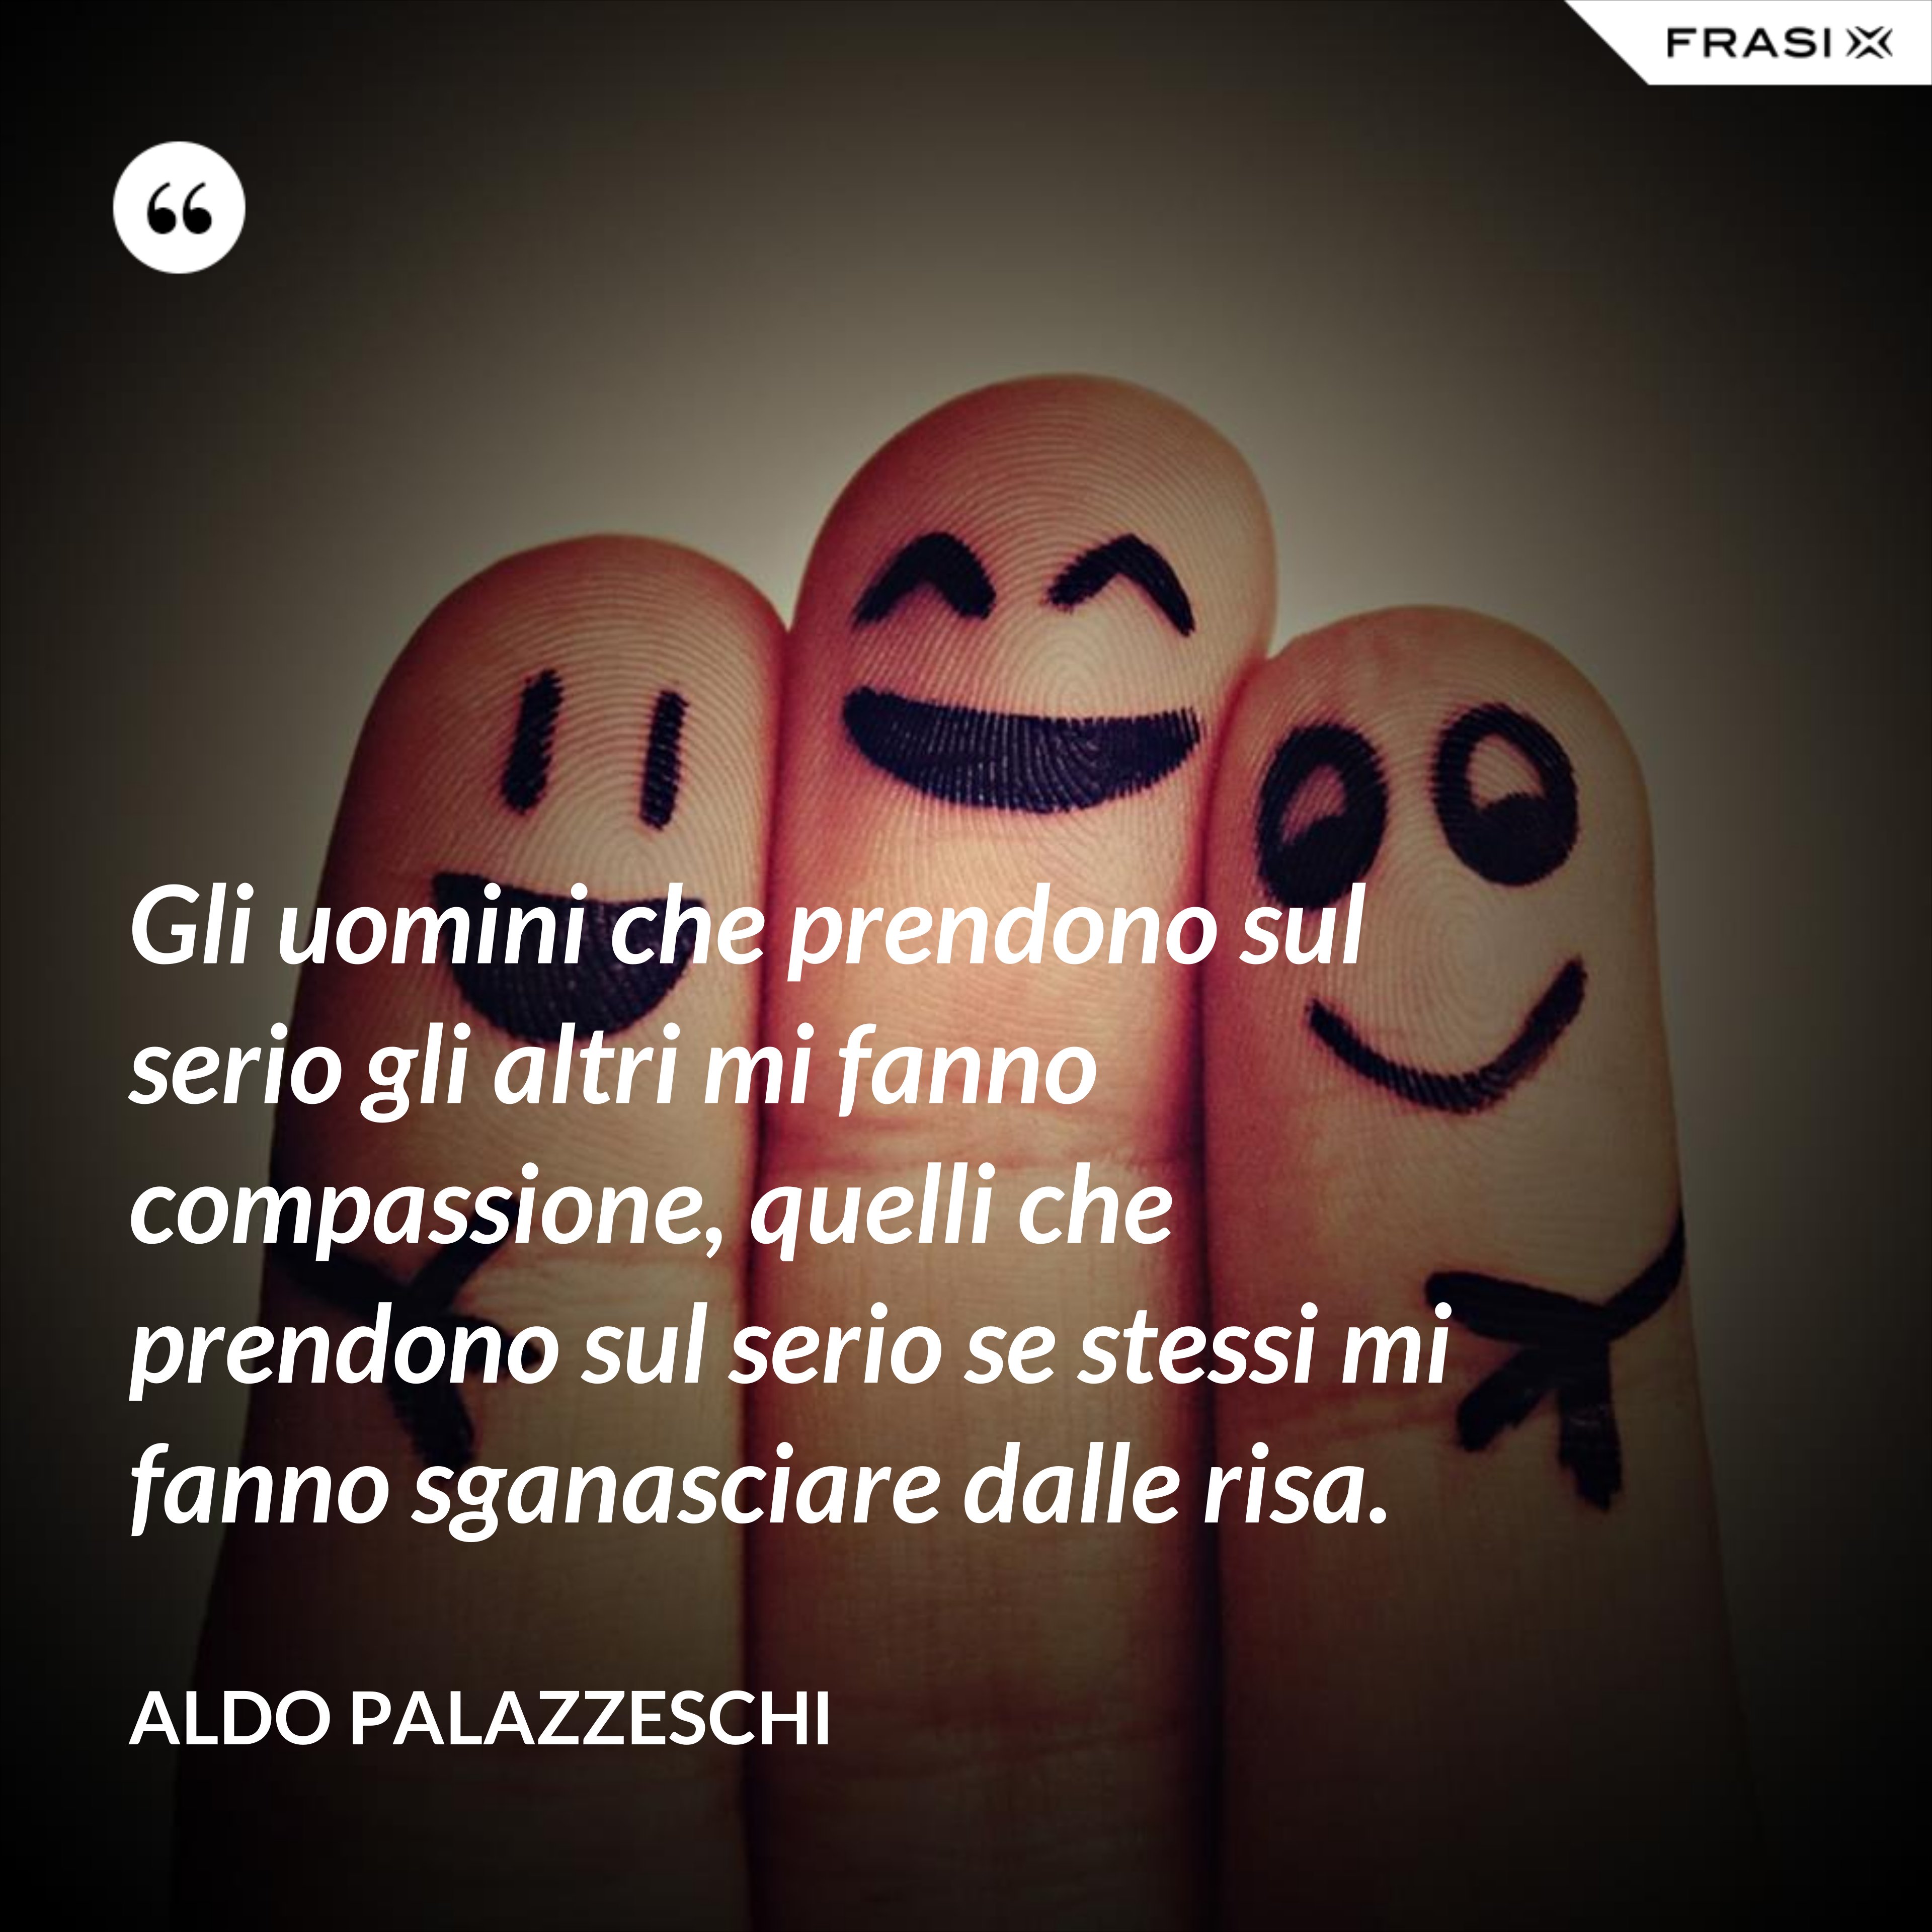 Gli uomini che prendono sul serio gli altri mi fanno compassione, quelli che prendono sul serio se stessi mi fanno sganasciare dalle risa. - Aldo Palazzeschi